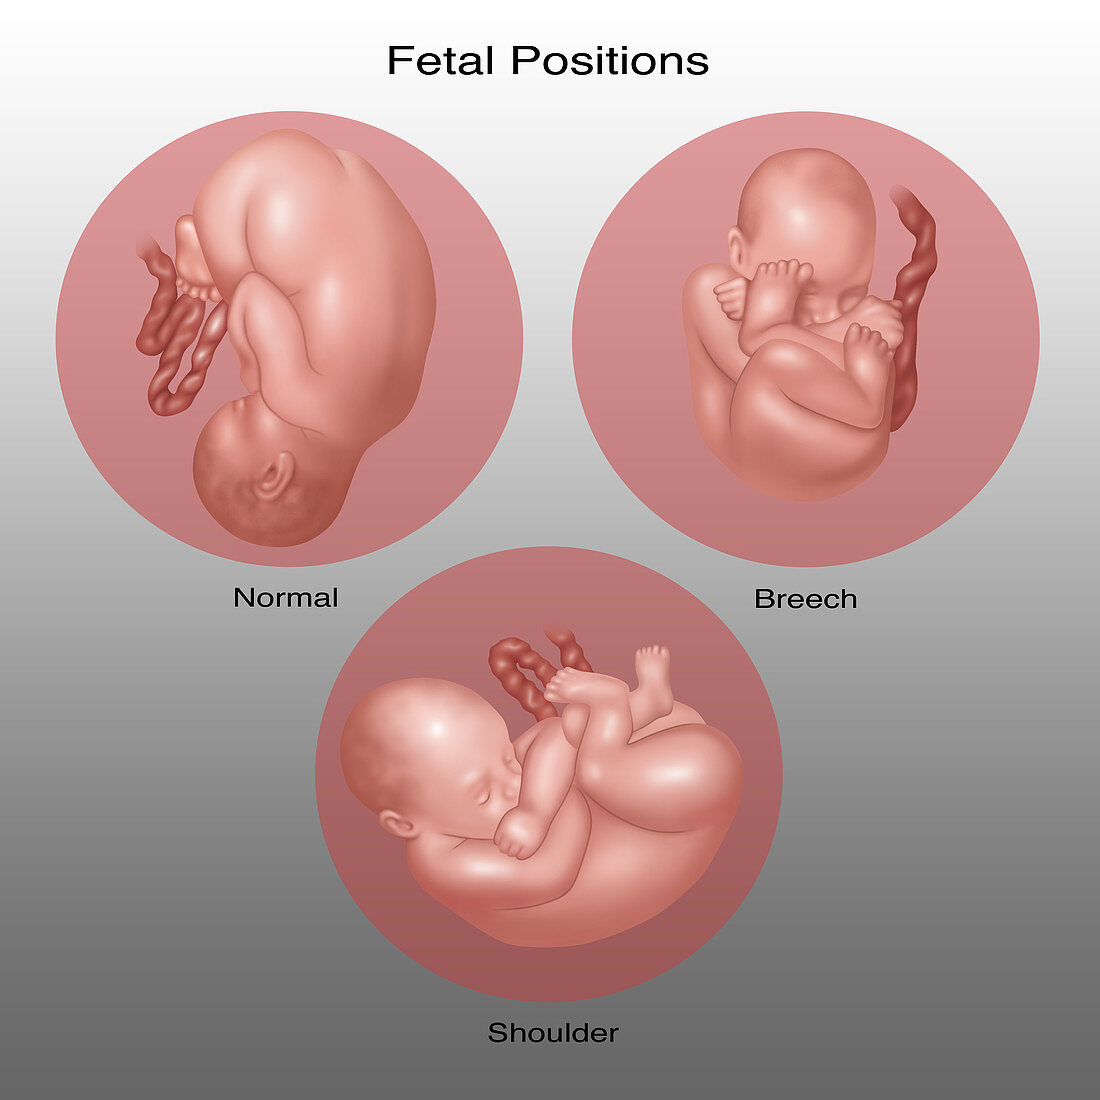 Fetus Positions in Uterus, Illustration